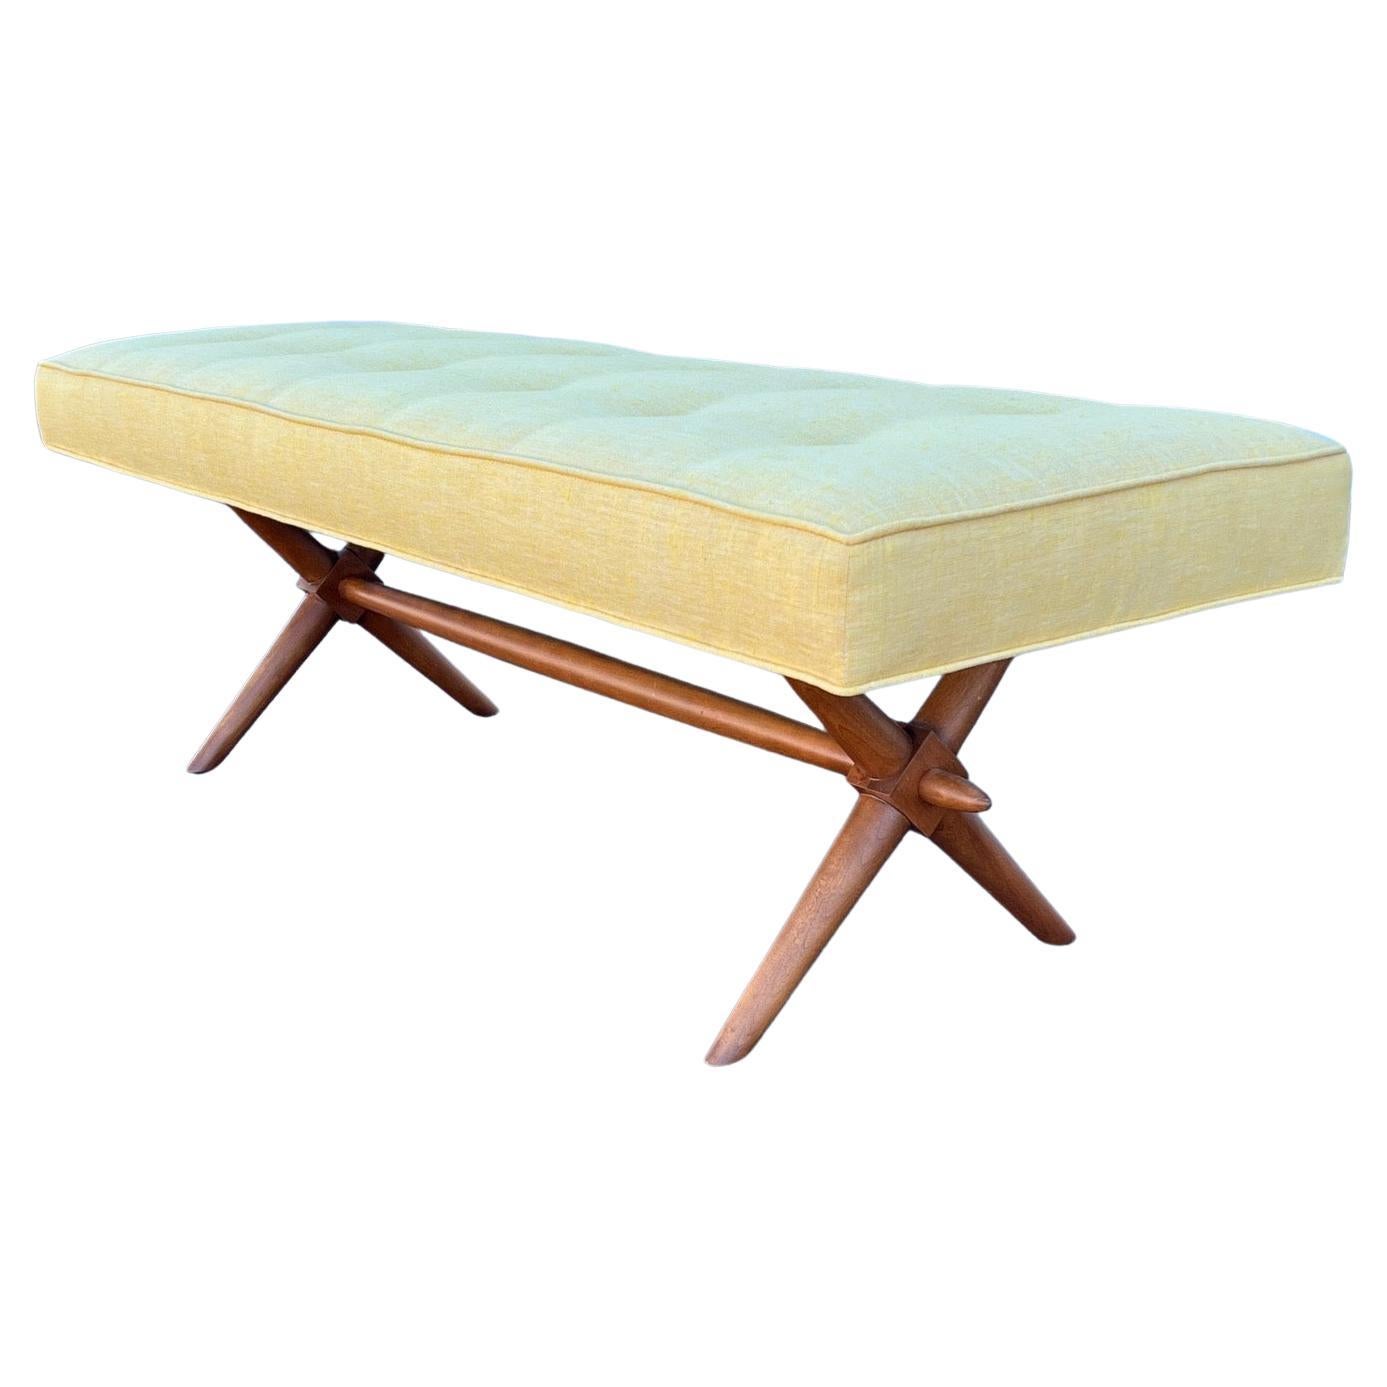 Classic Upholstered Bench by T.H. Robsjohn-Gibbings